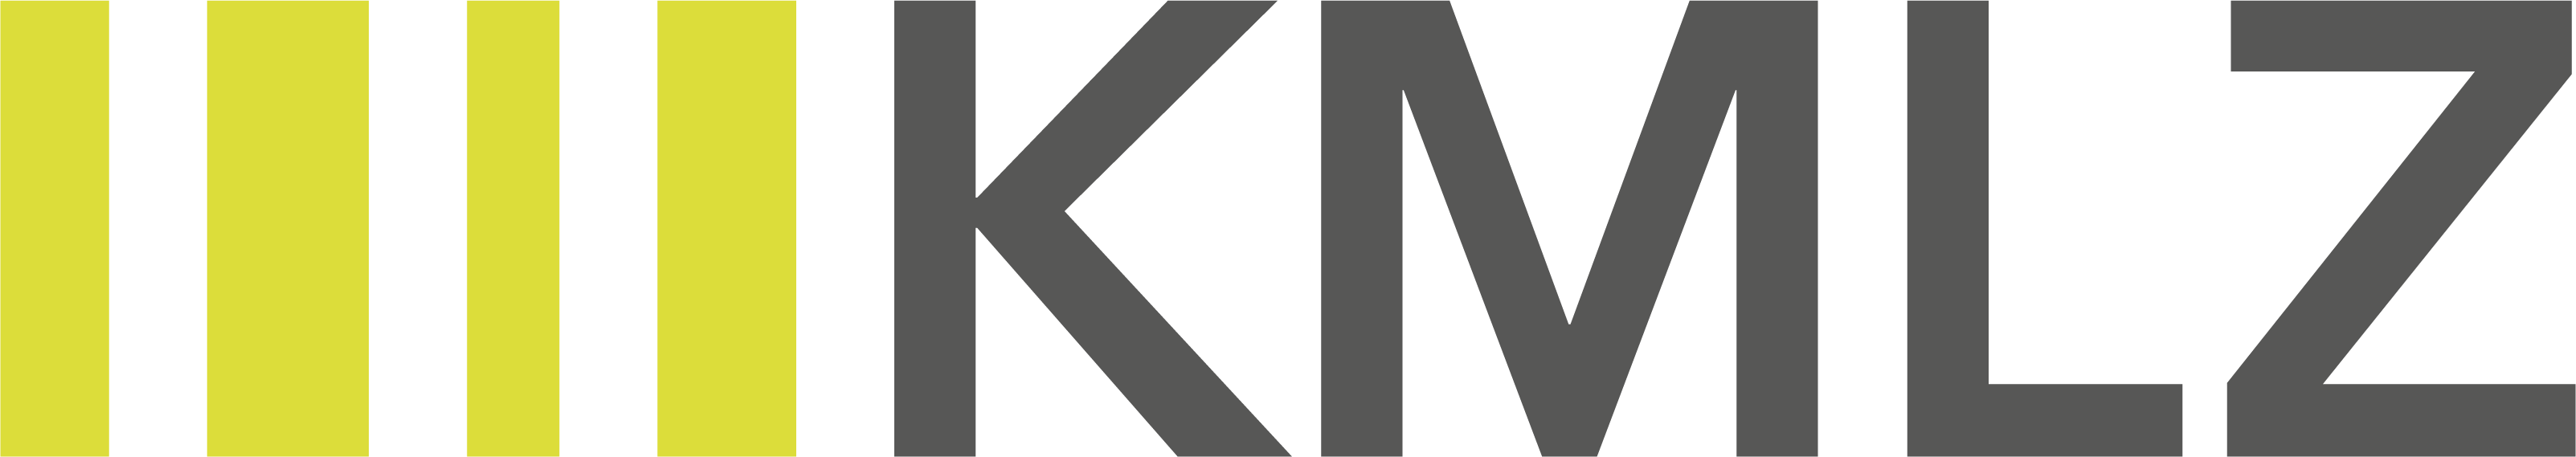 KMLZ Logo